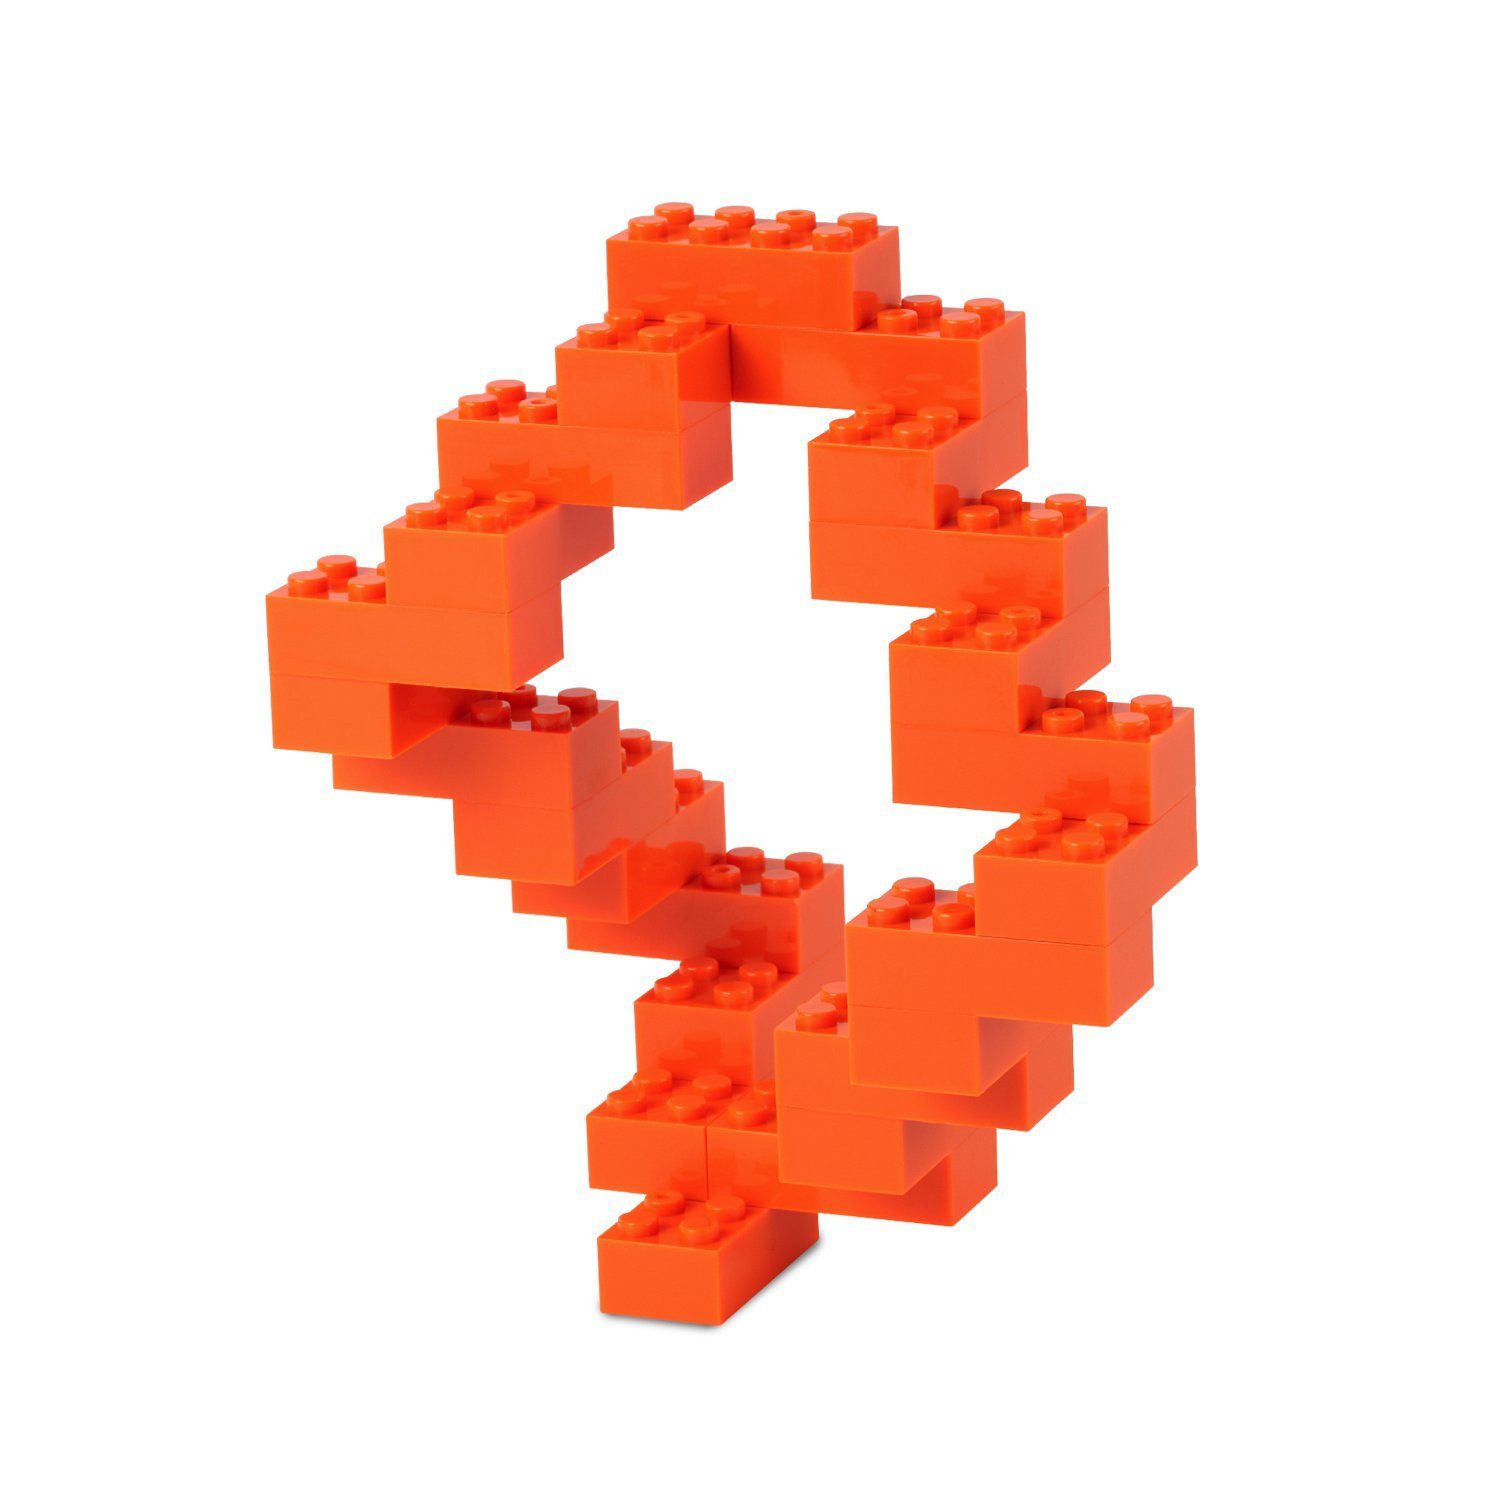 mit Box, Bausteine orange - Konstruktionsspielsteine Box-Set Anderen (3er Herstellern + Platte Farben verschiedene Steinen Katara 520 zu Kompatibel + allen Set),